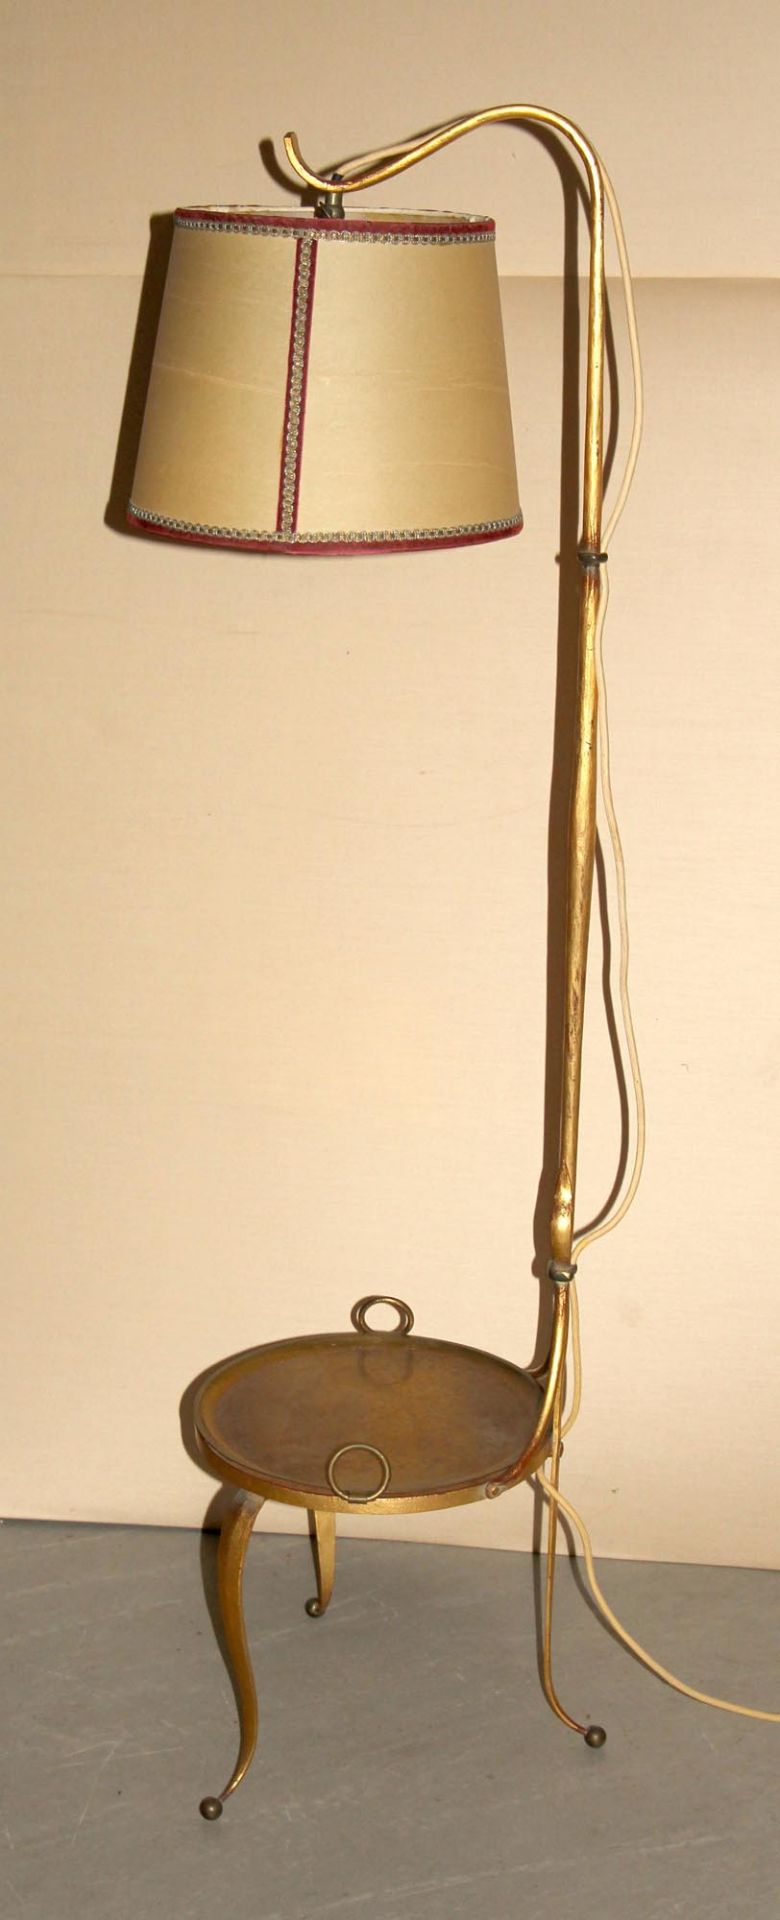 Stehlampe, 1950er JahreEisen geschmiedet, goldfarben, auf Dreibeintisch mit Platte aus Messing als